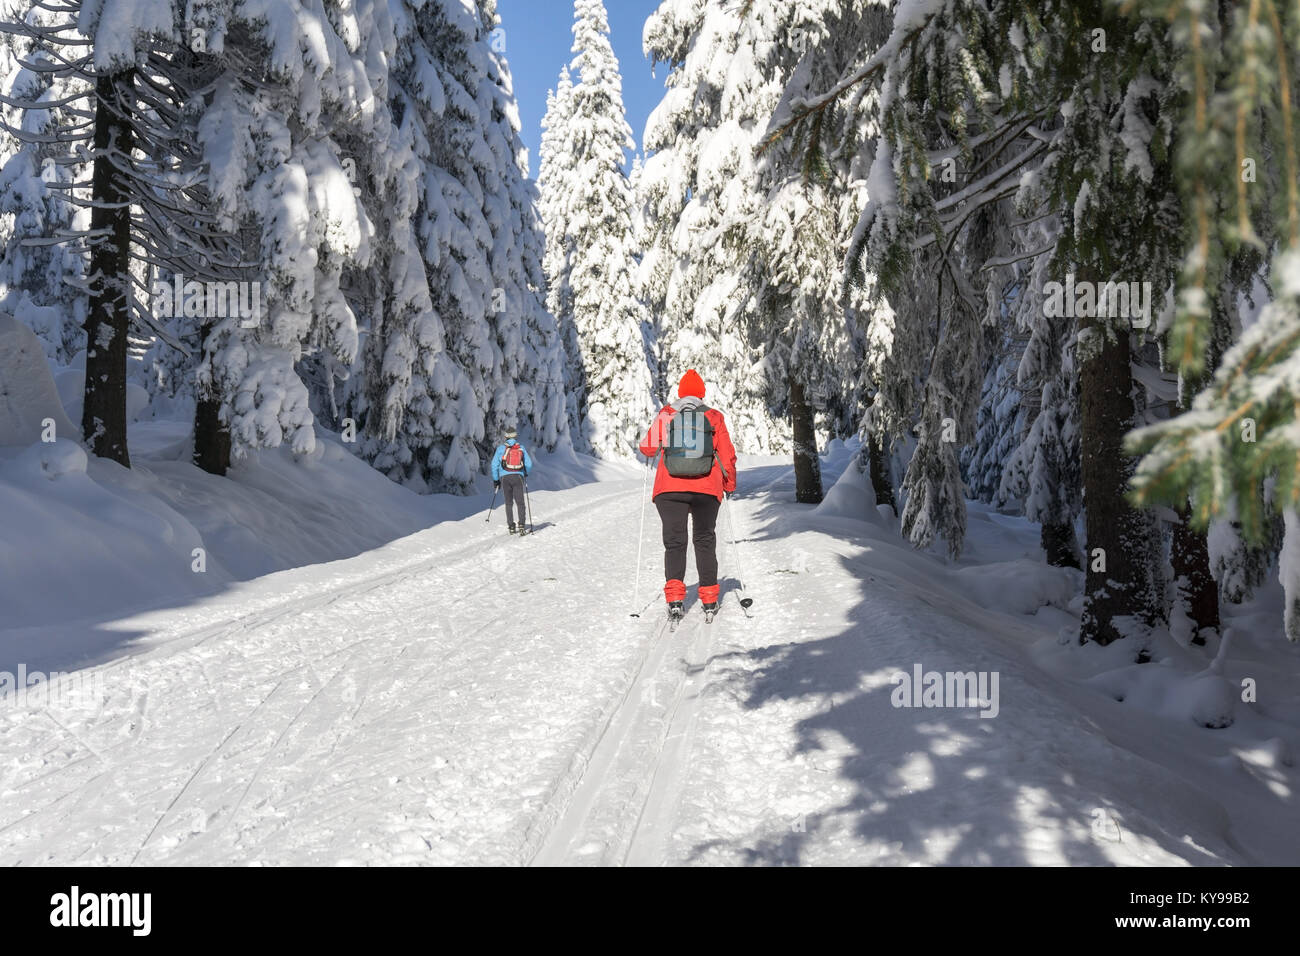 La route d'hiver dans les montagnes. Skieurs sur pistes de ski entretenues pour le pays. Les arbres couverts de neige fraîche en journée ensoleillée à Giant Mountains, Pologne Banque D'Images